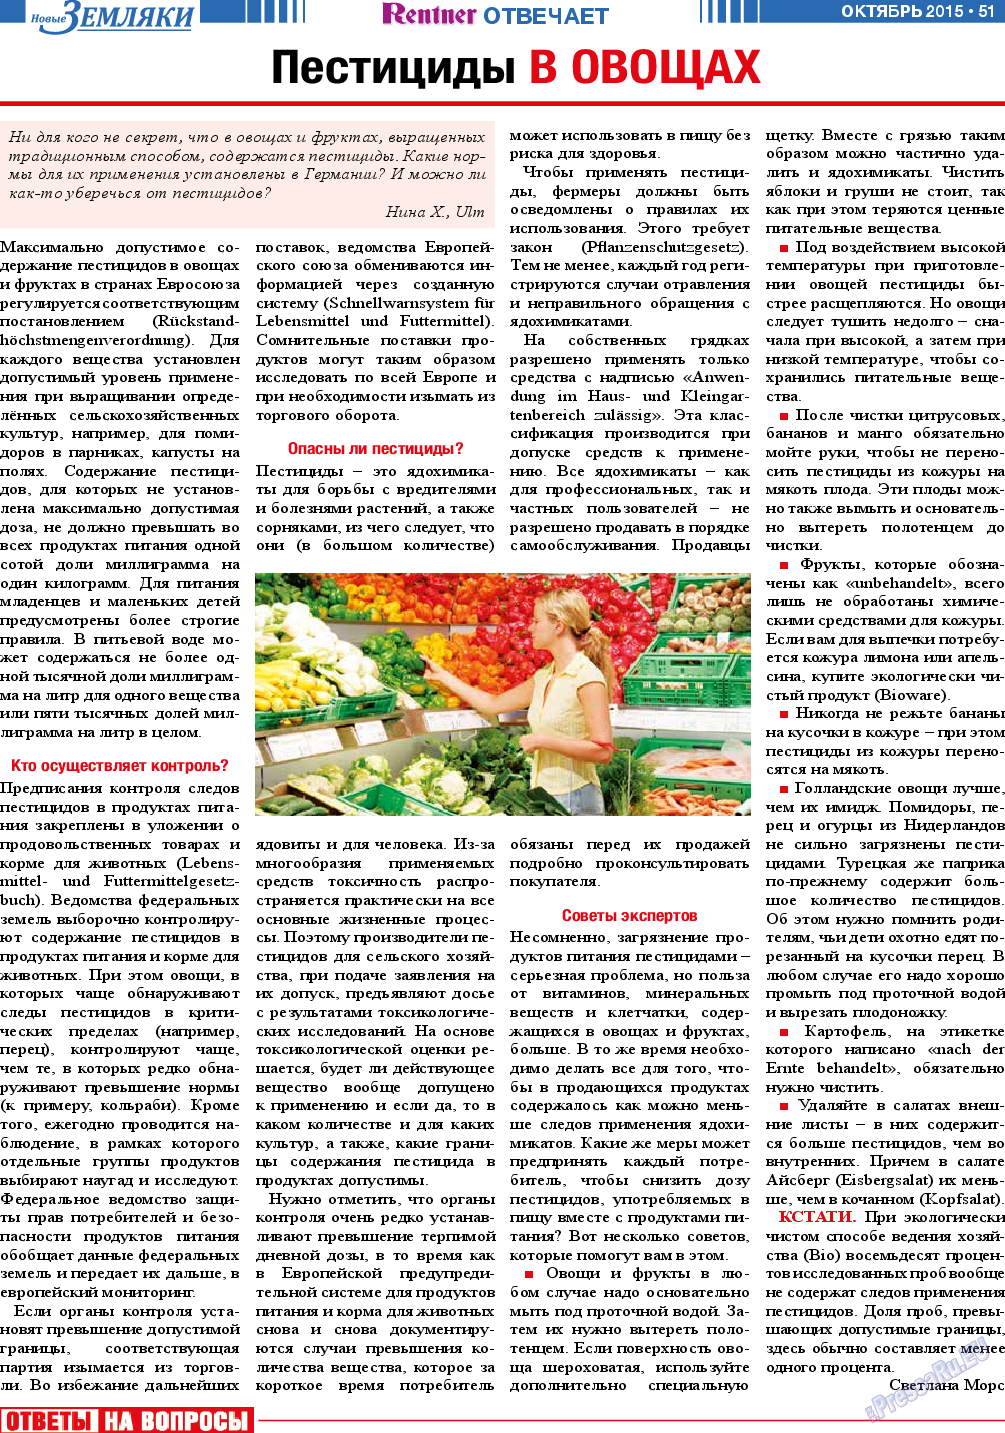 Новые Земляки, газета. 2015 №10 стр.51